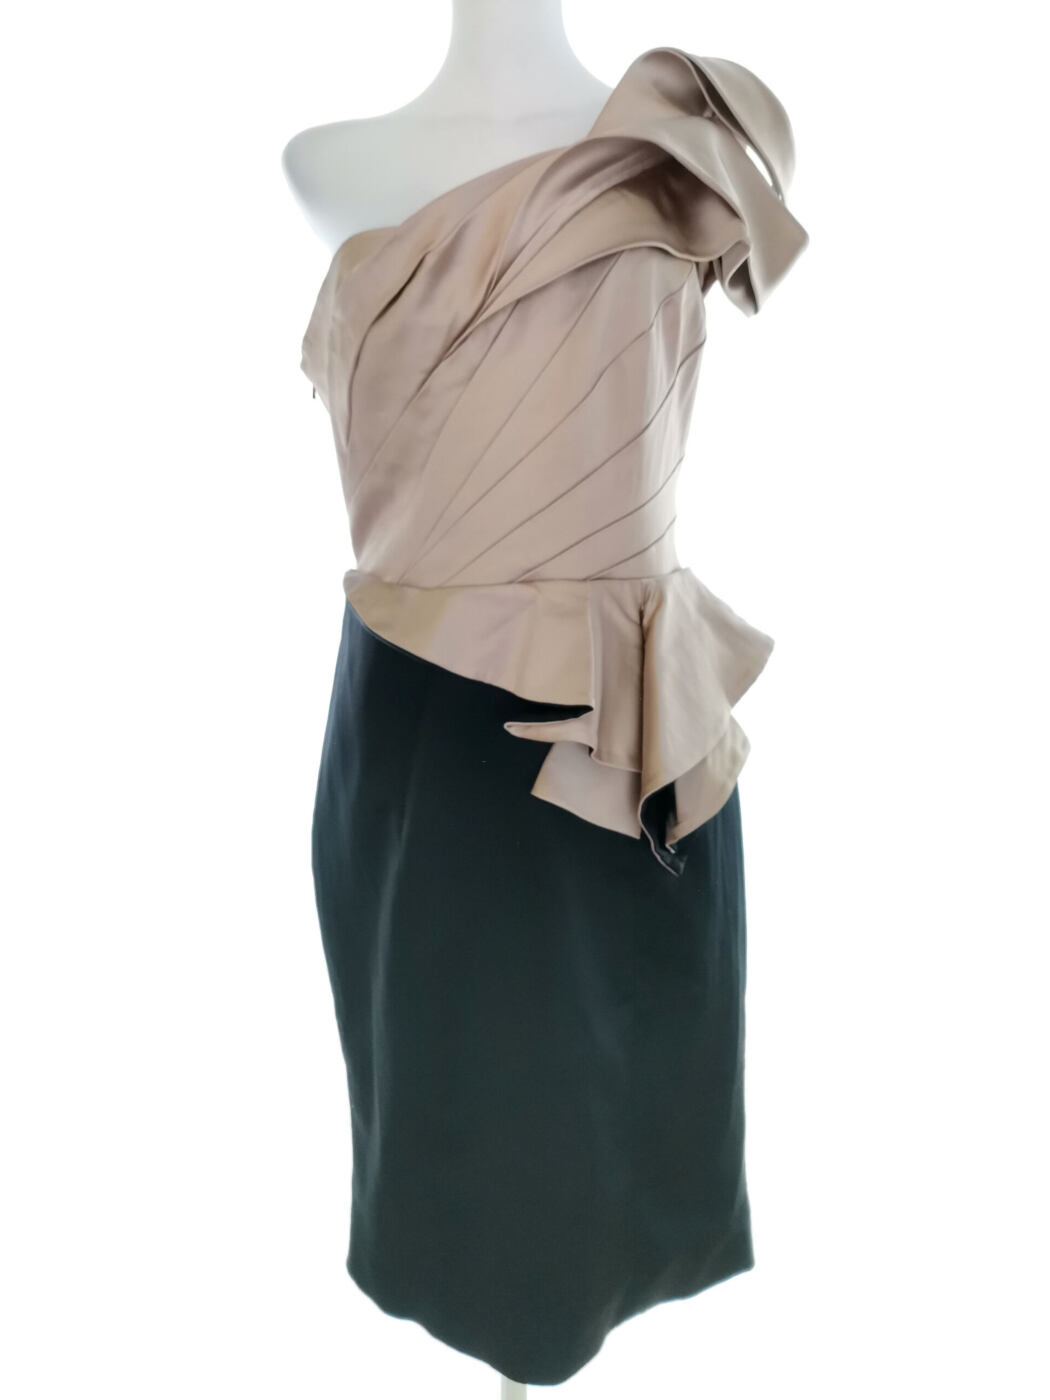 Karen MILLEN Rozmiar 14 (42) Kolor Beżowy Na Jedno Ramię Suknia Balowa Sukienka Wieczorowa Krótki rękaw Midi